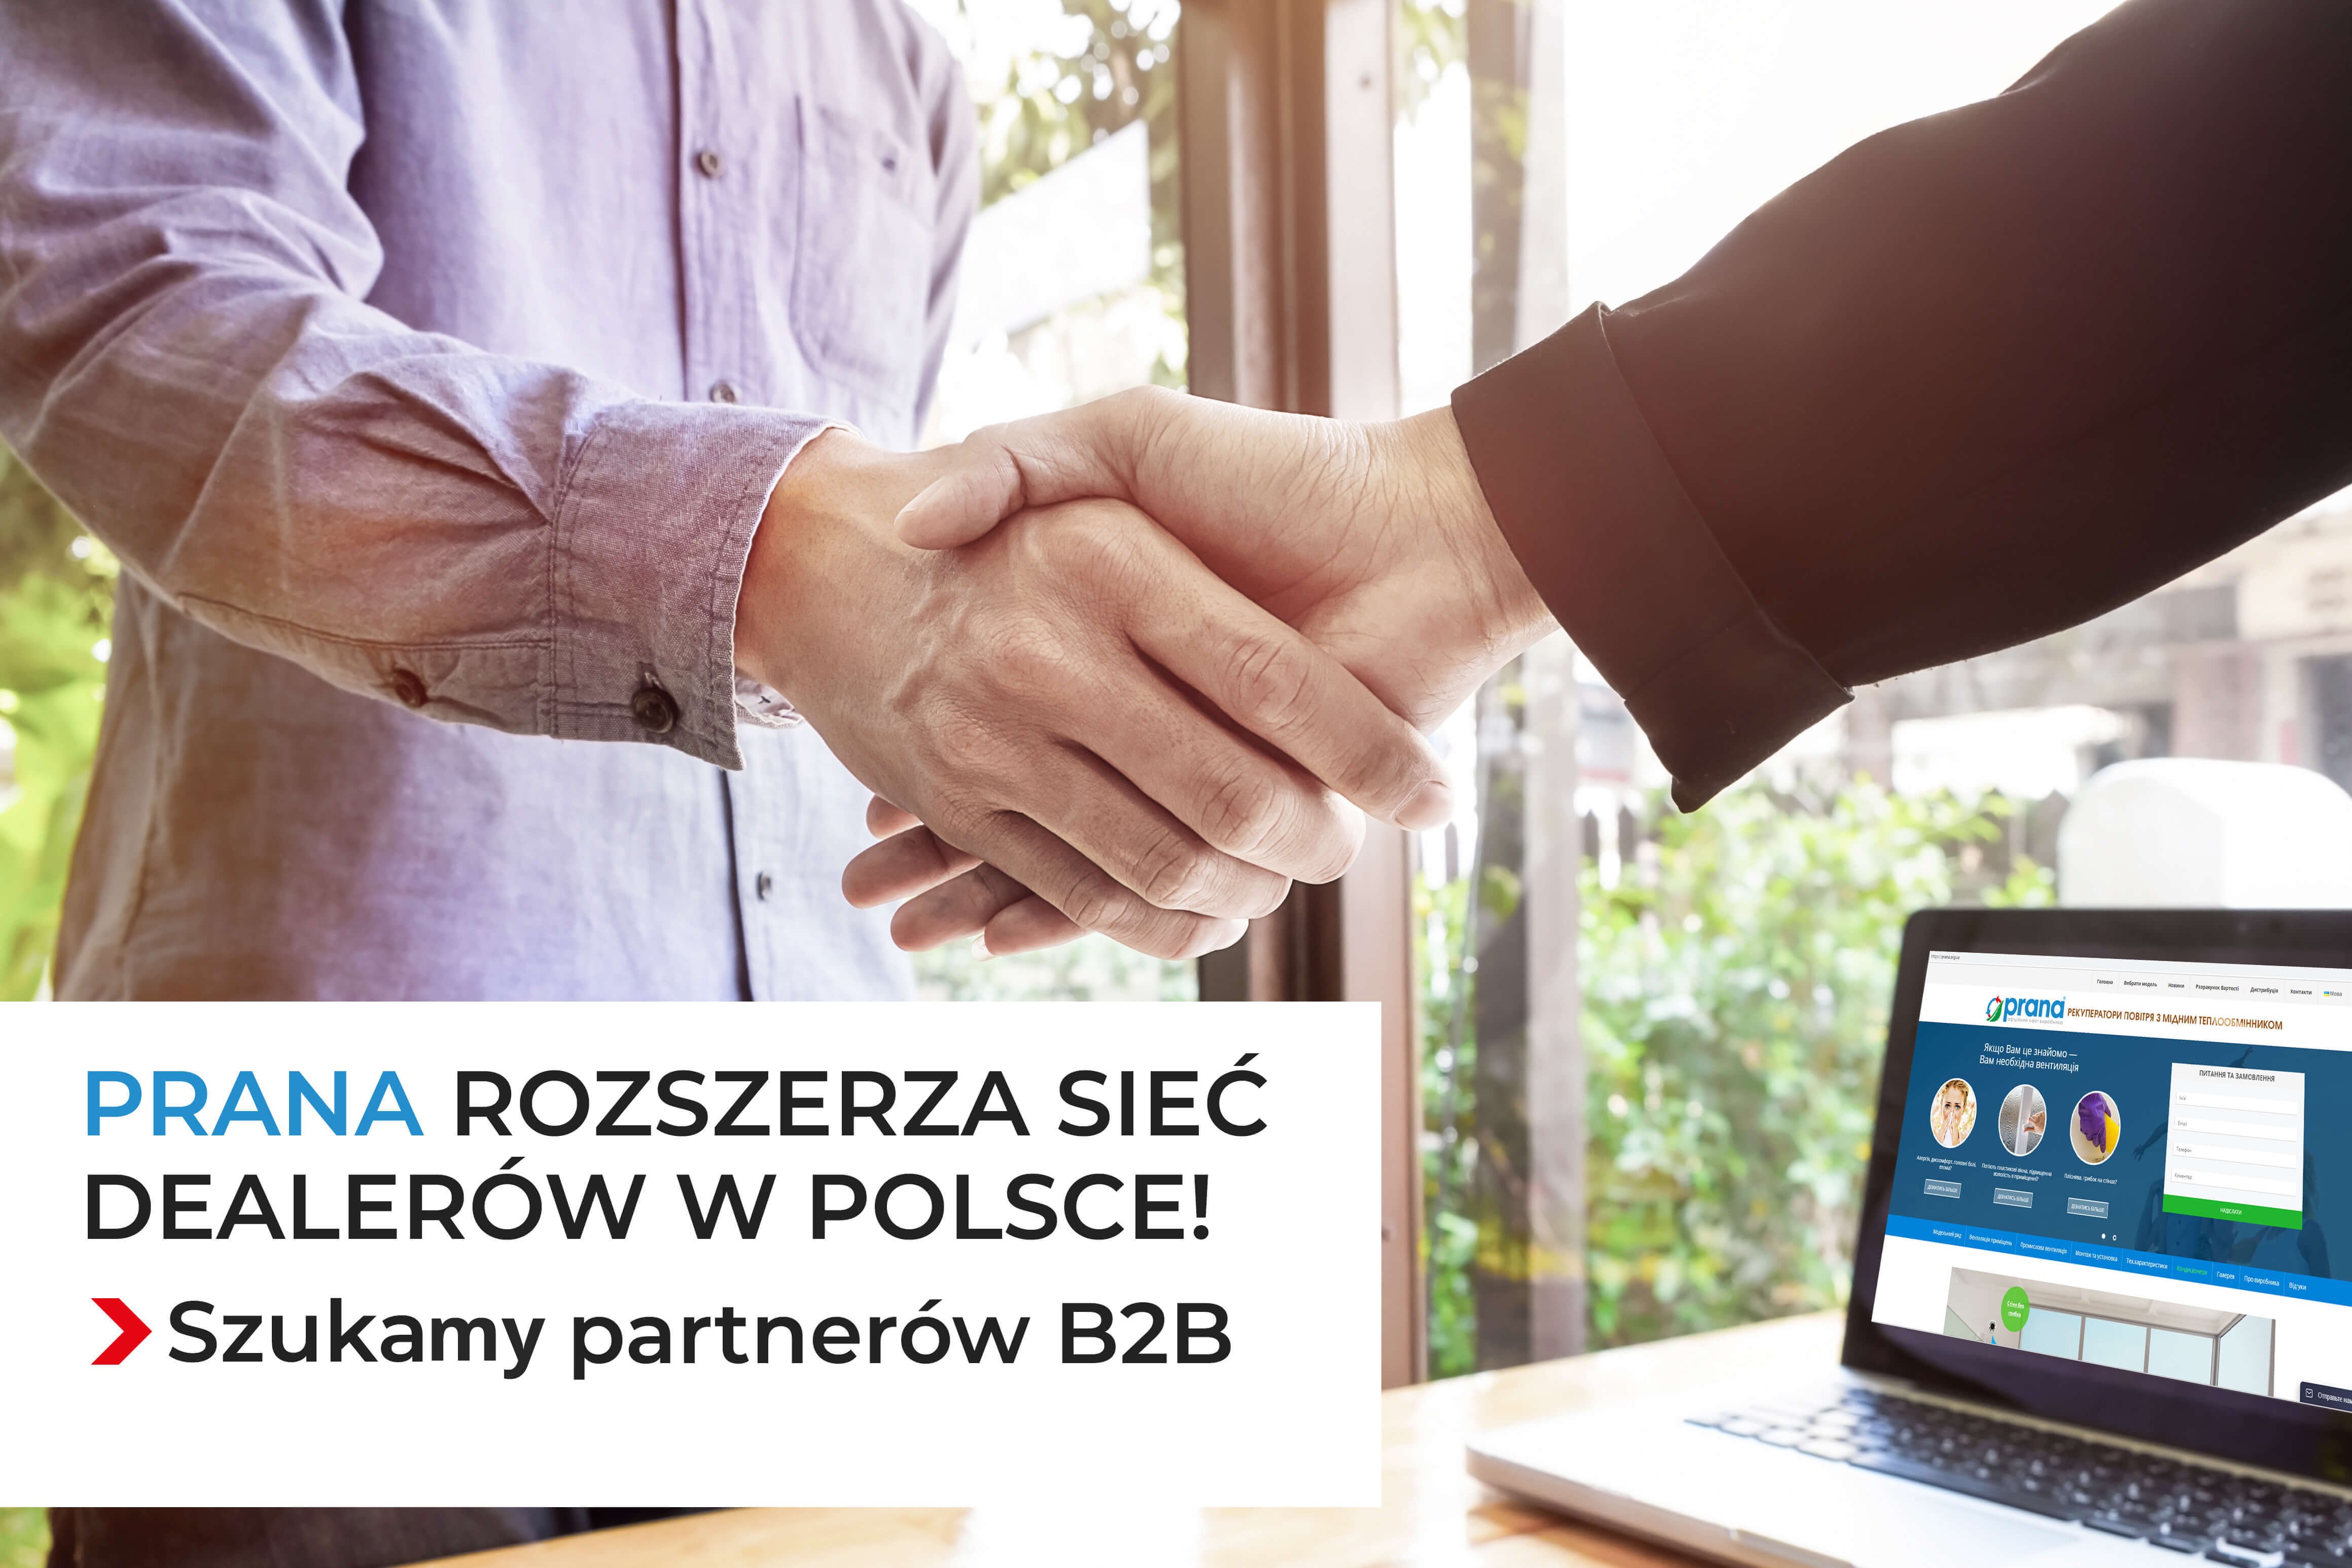 PRANA rozszerza sieć dealerów w Polsce